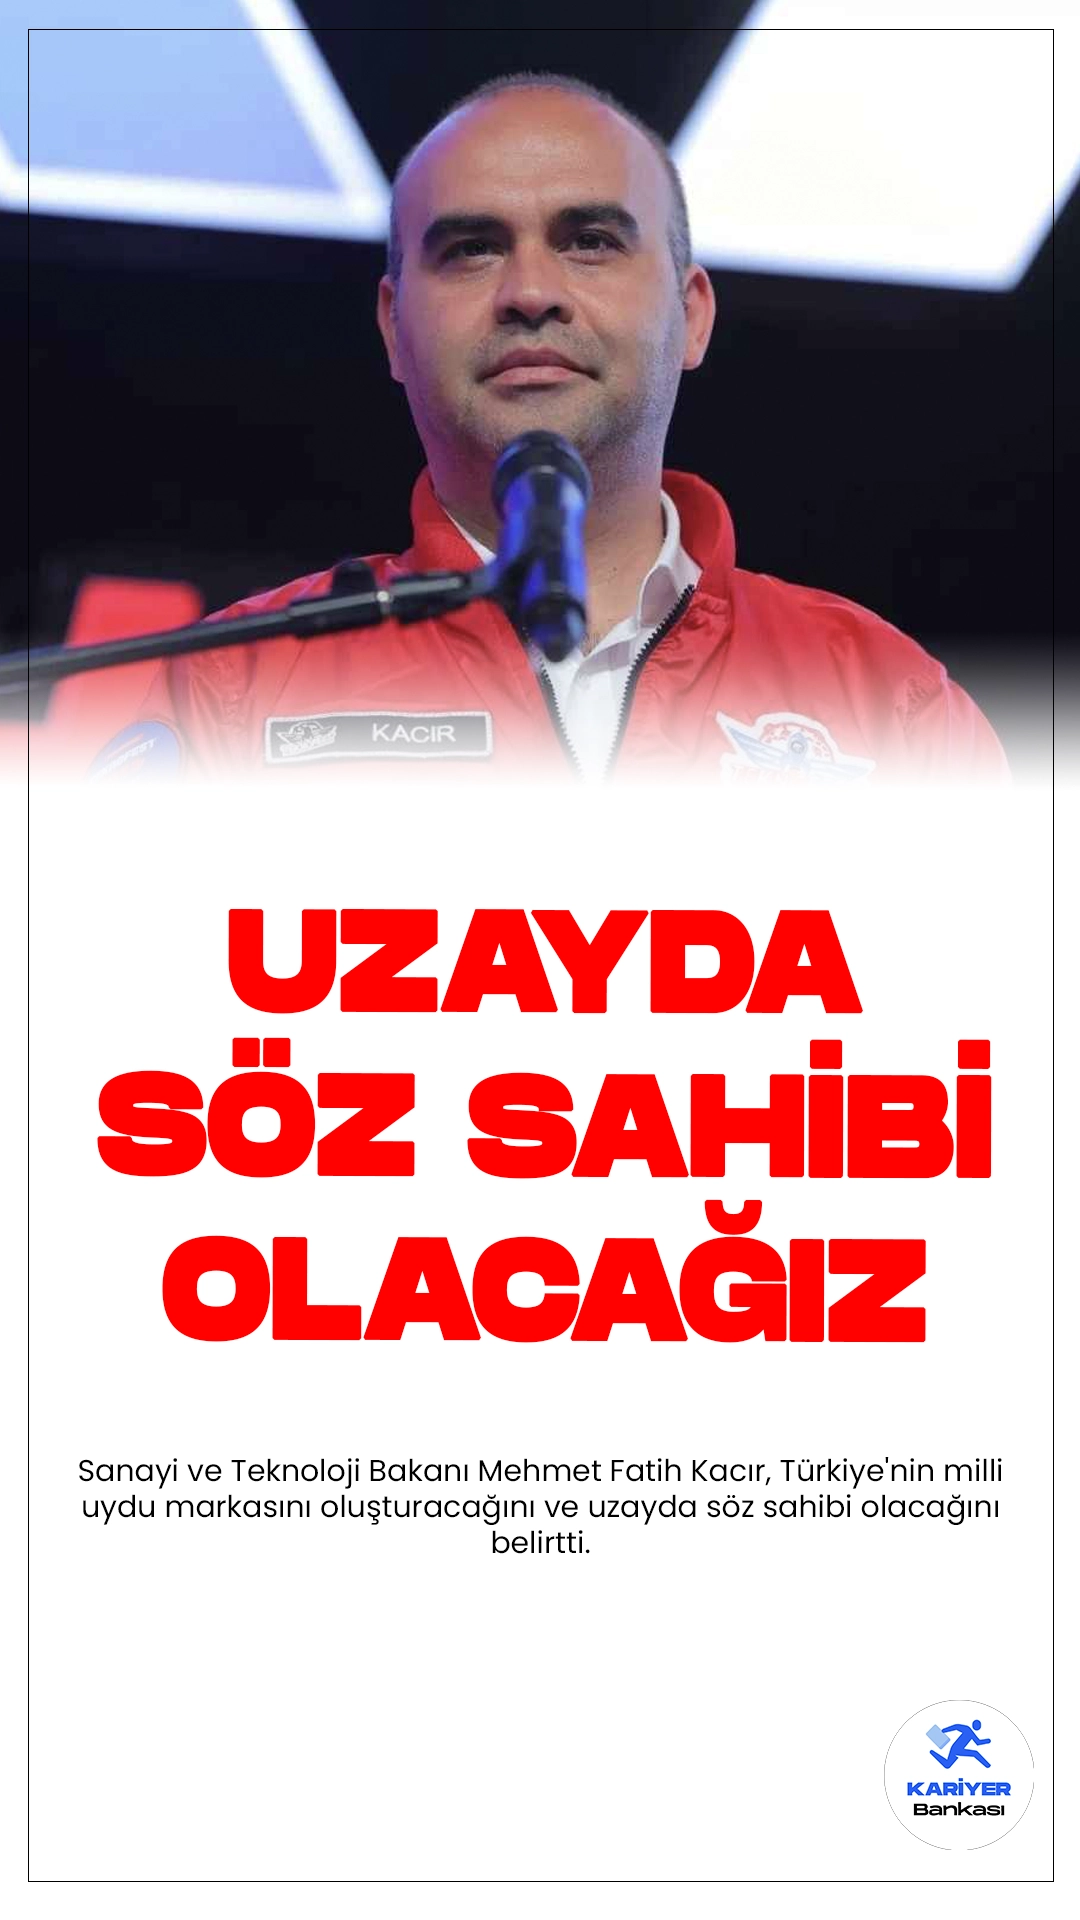 Sanayi ve Teknoloji Bakanı Mehmet Fatih Kacır, Türkiye'nin milli uydu markasını oluşturacağını ve uzayda söz sahibi olacağını belirtti.